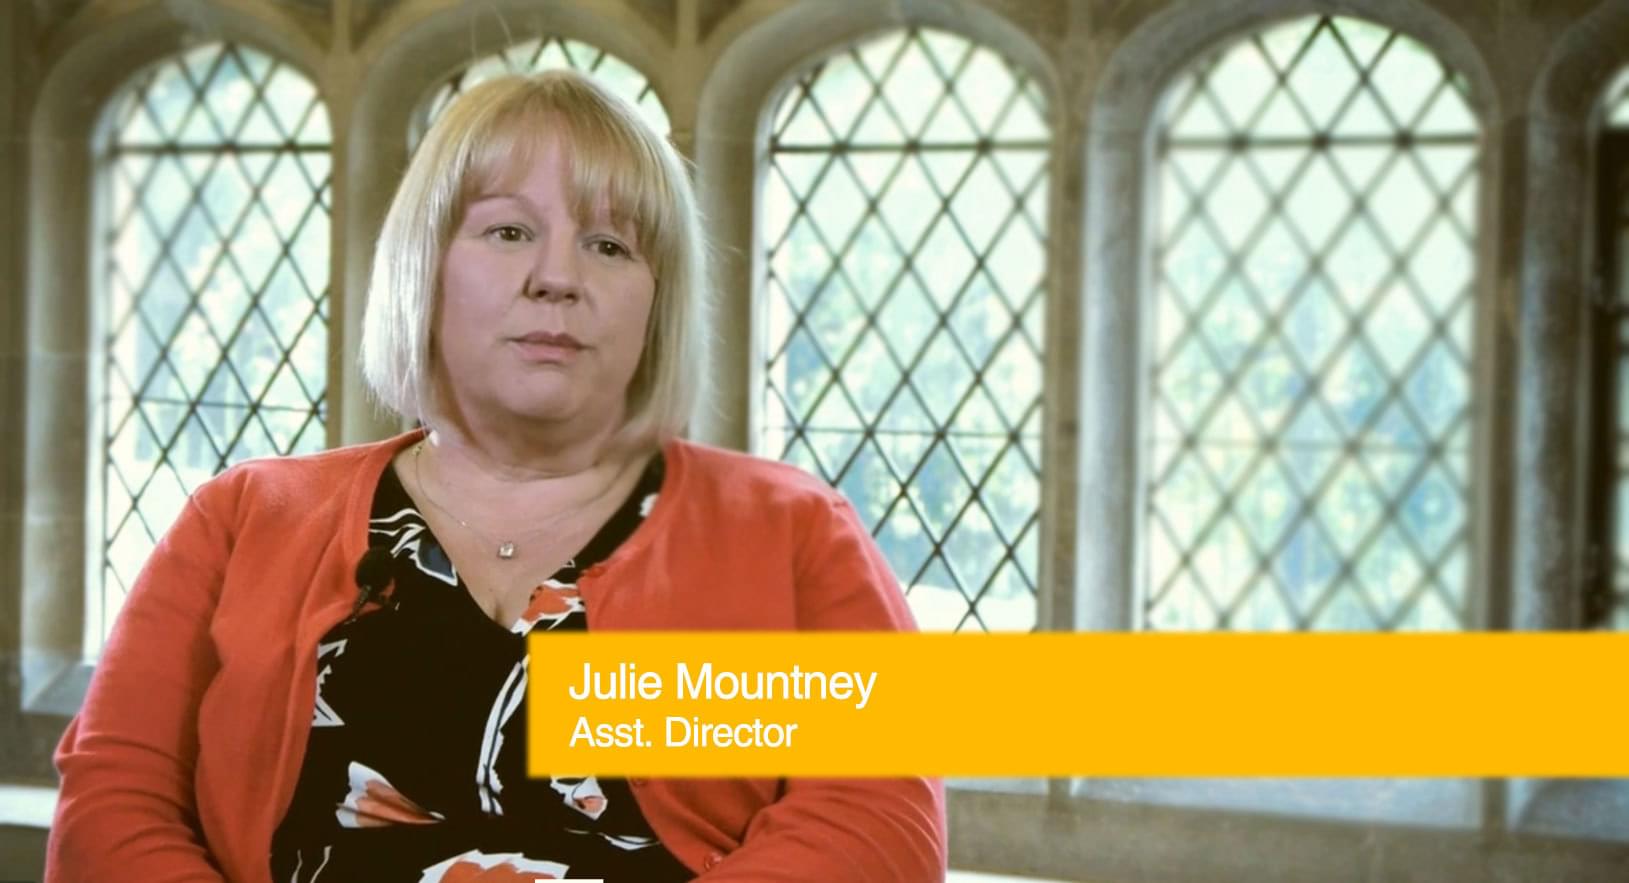 Julie Mountney - Asst. Director